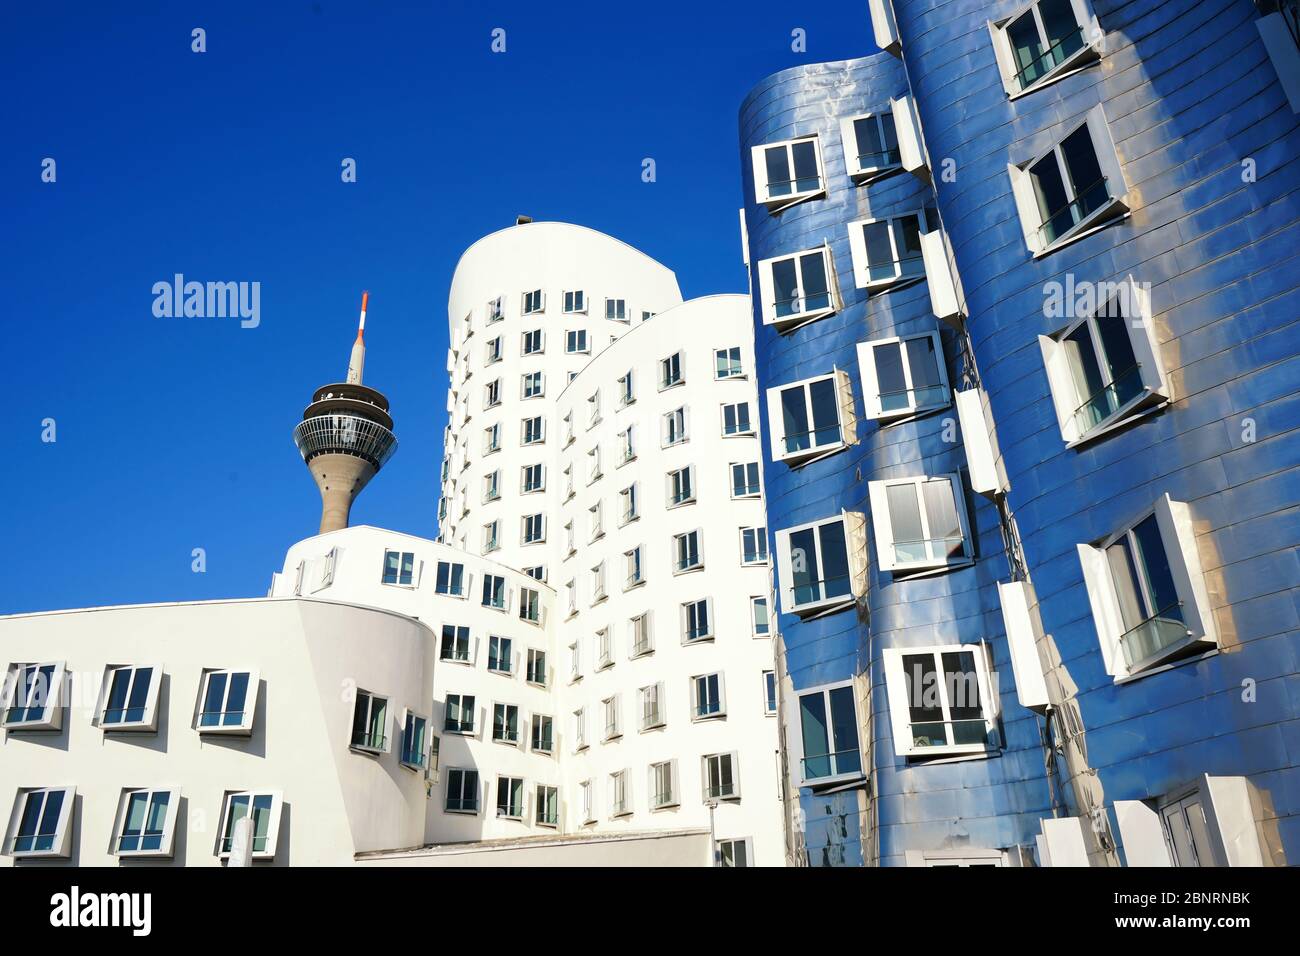 Gebäude des Stararchitekten Frank O. Gehry in Düsseldorf am Neuen Zollhof, Medienhafen / Medienhafen. Sonniger Tag mit blauem Himmel. Stockfoto